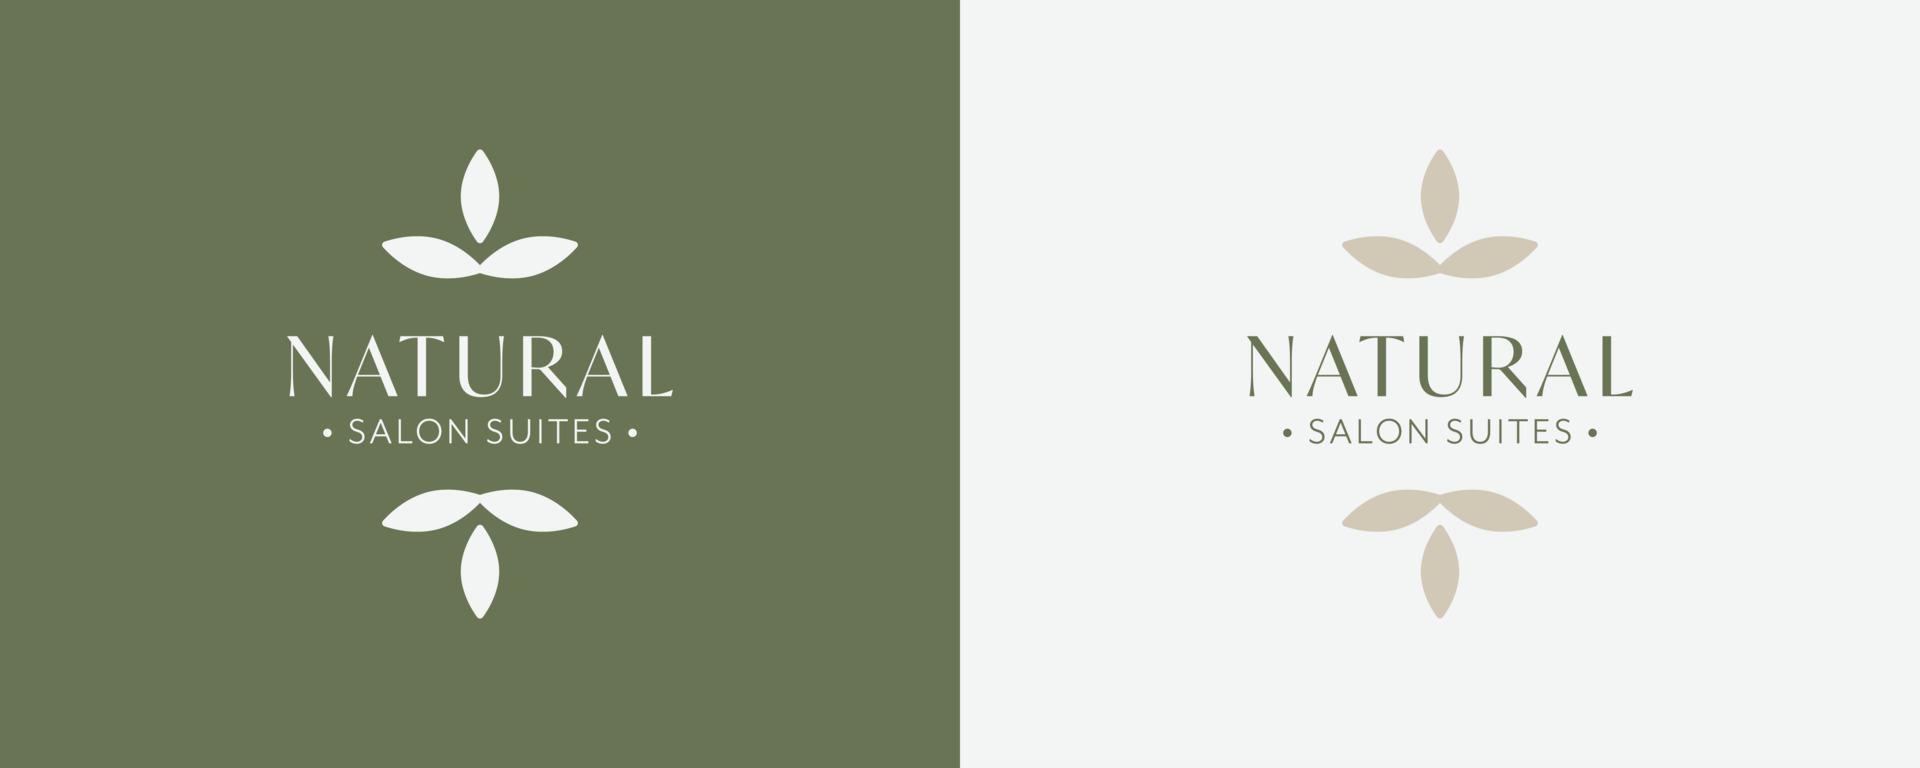 natuurlijke salon suites vector pictogram illustratie. embleem logo. symbool voor cosmetica, sieraden, schoonheidsproducten en handwerk, tattoo-studio's. natuurlijk logo-ontwerp